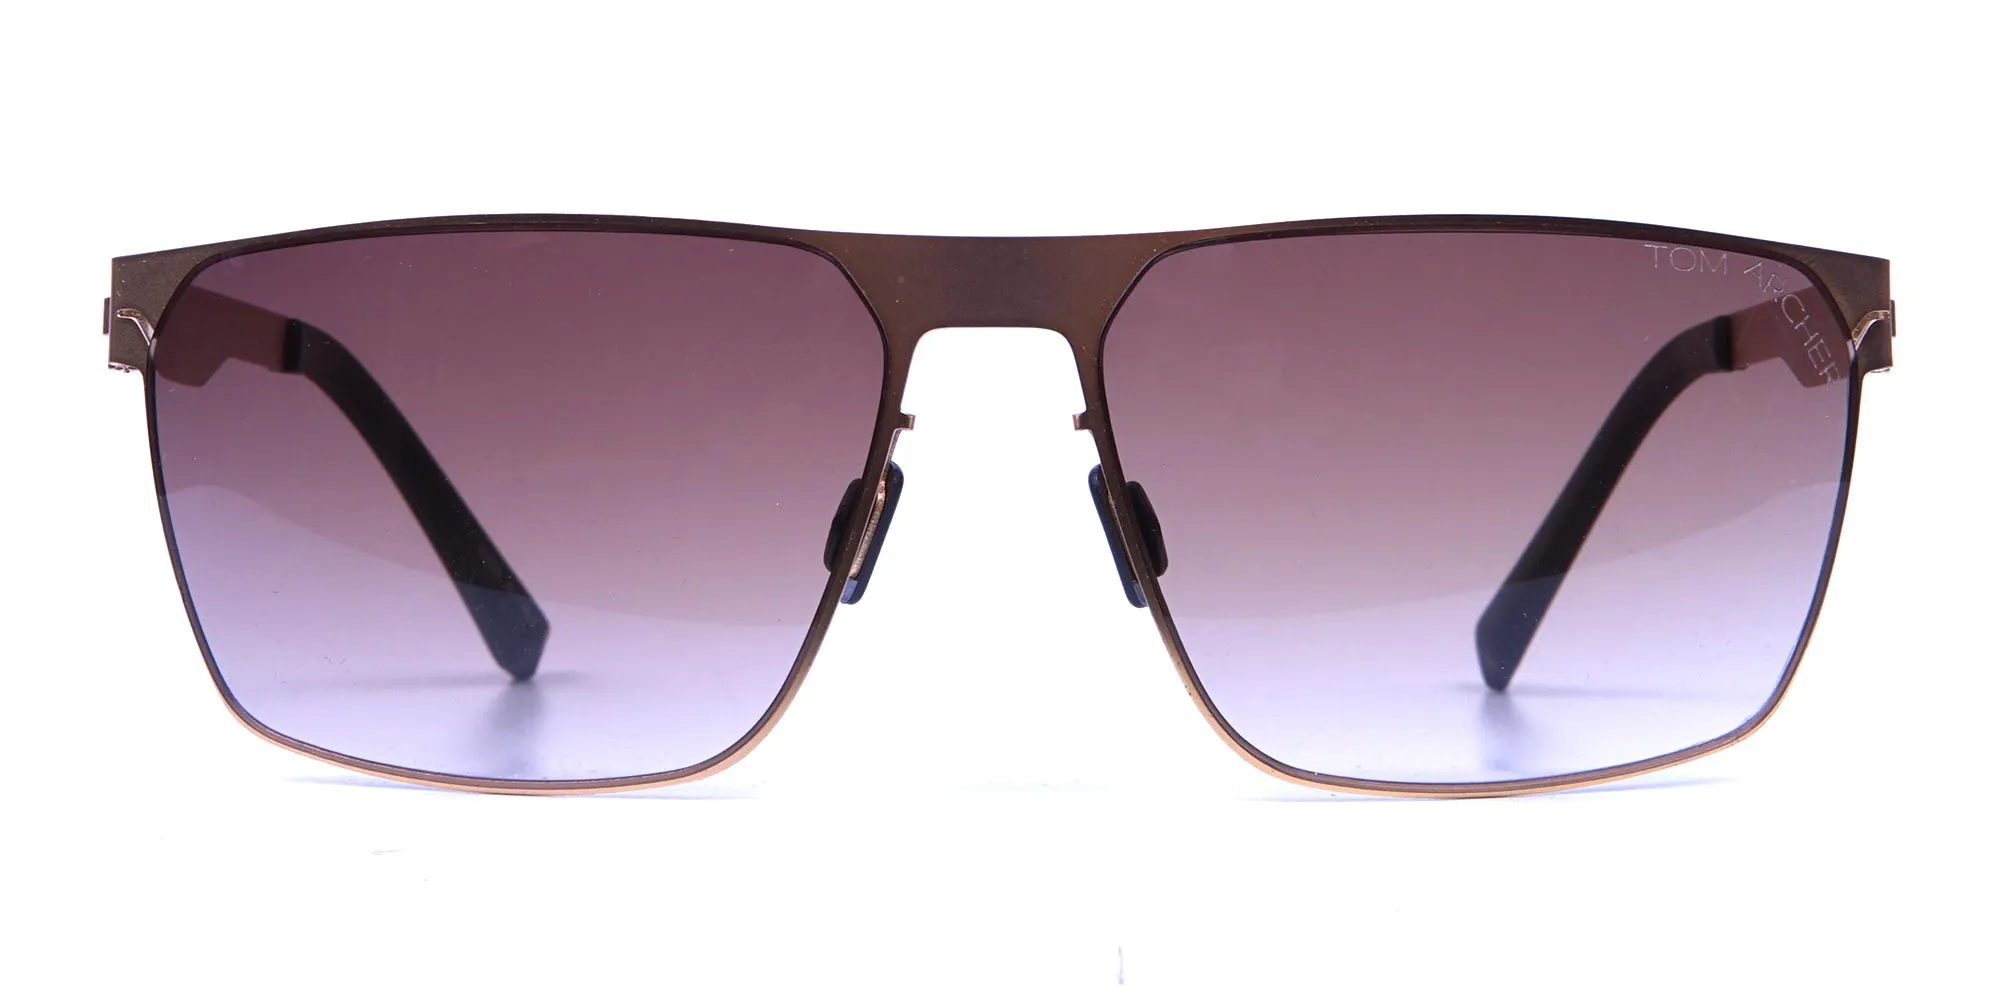 Gold Framed Rectangular Shaped Sunglasses -1